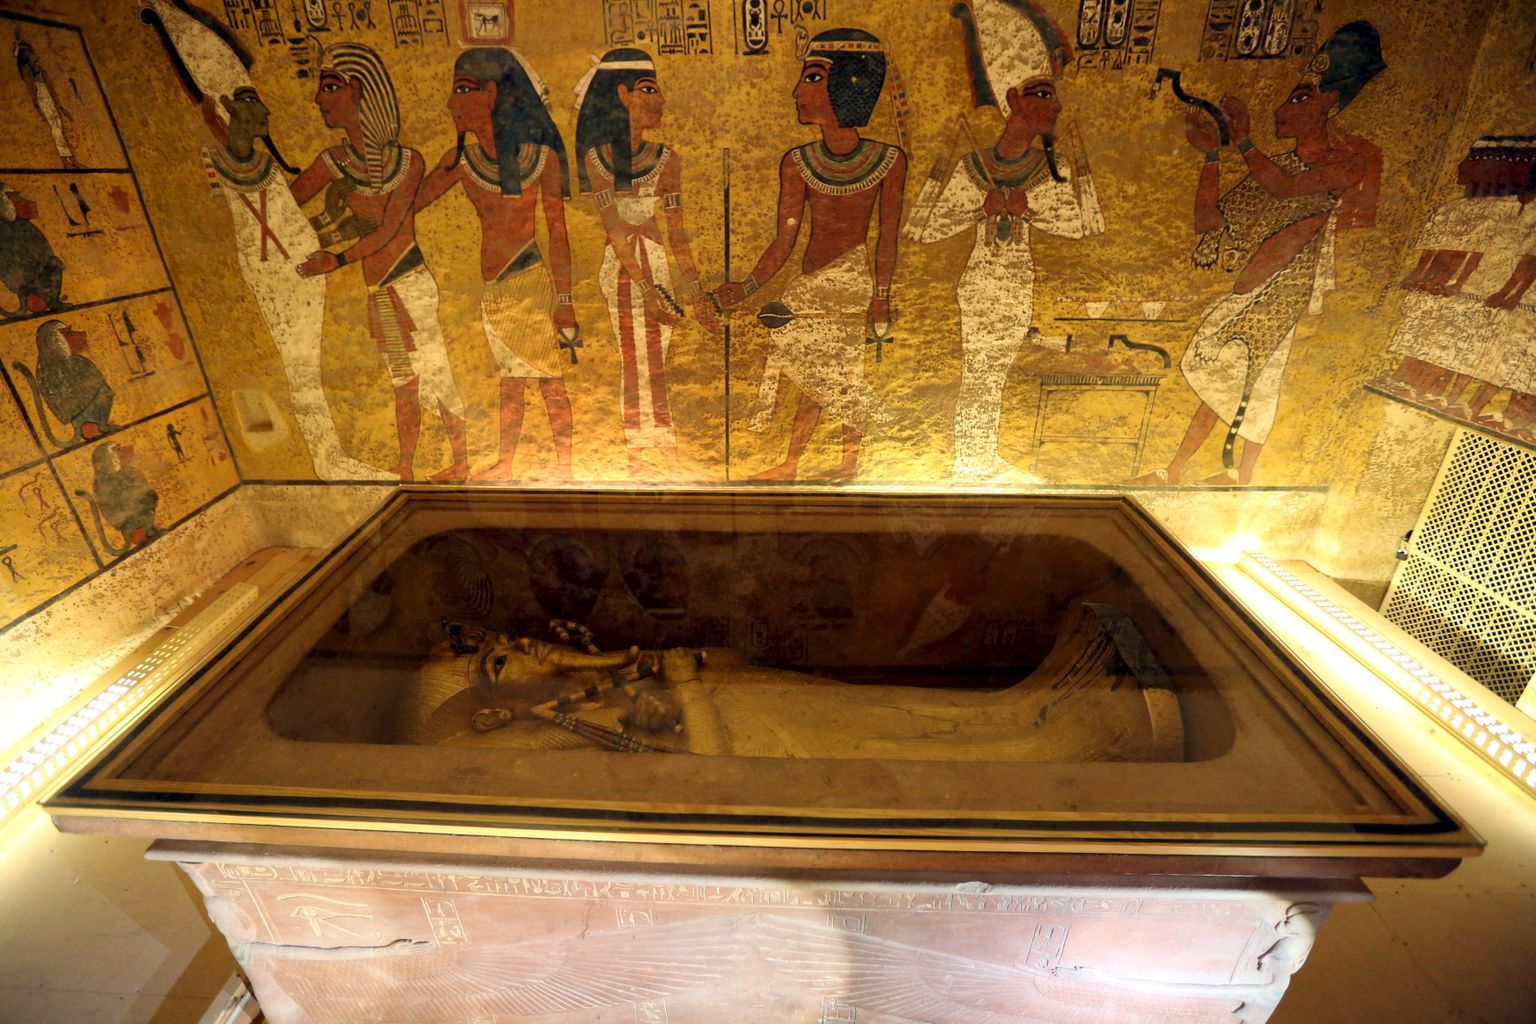 Vana-Egiptuse vaarao Tutanhamoni kuldne sarkofaag.  Niiluse läänerannikul Luxori lähedal paikneb Kuningate org, kus asuvad endiste vaaraode hauad.